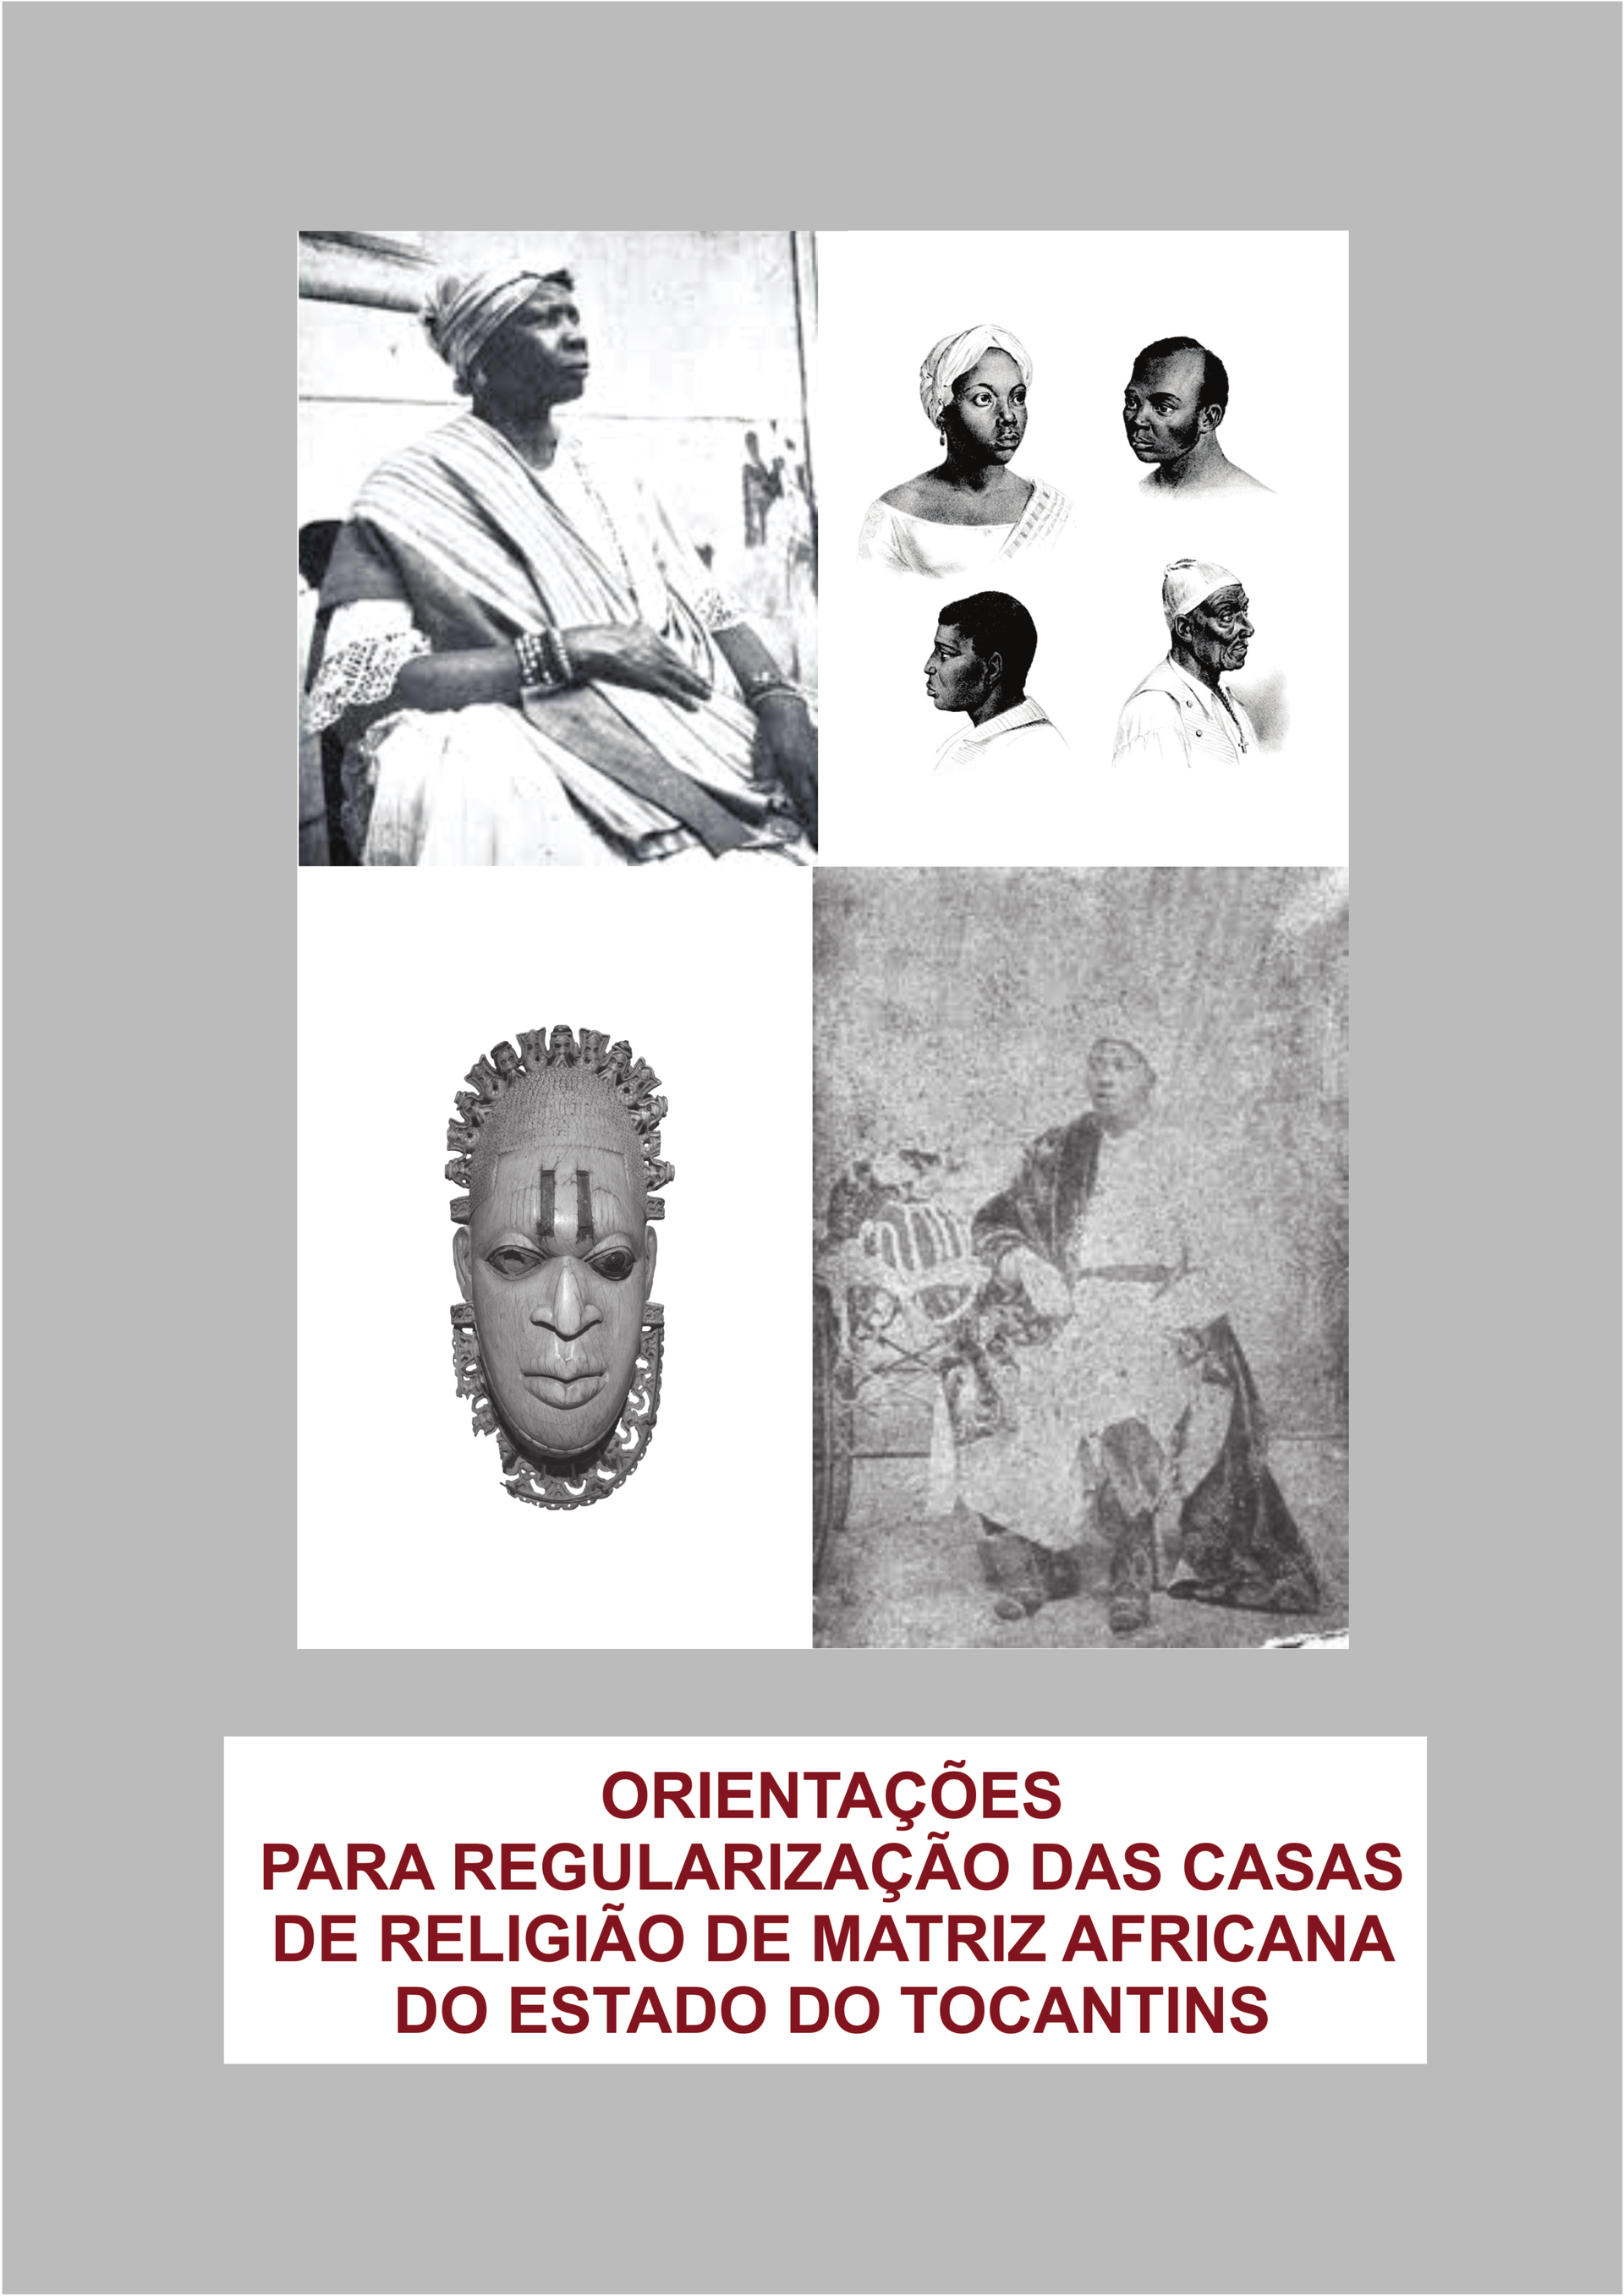 Orientações para regularização das casas de Matriz Africana do Estado do Tocantins